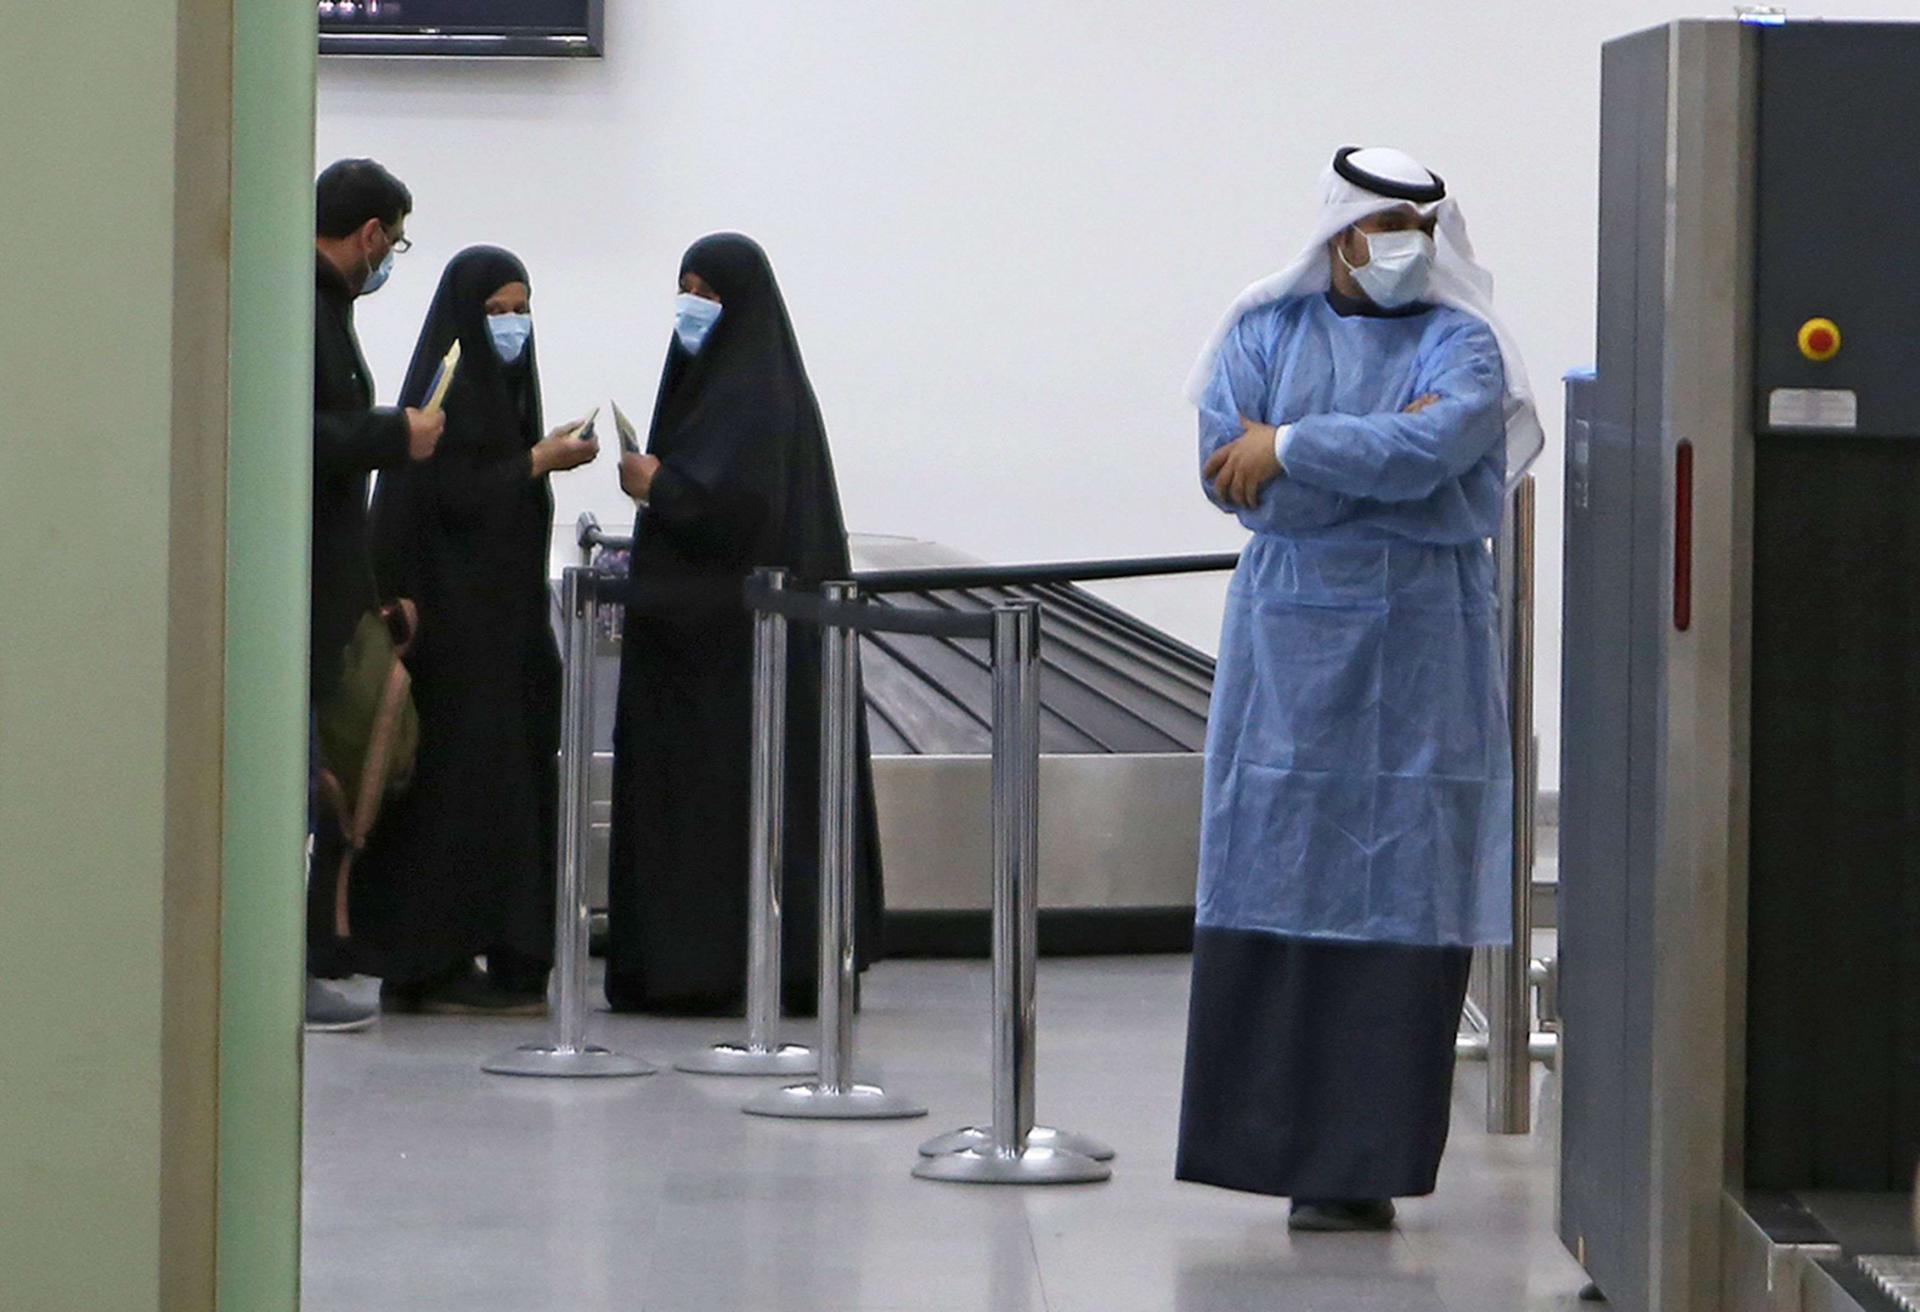 كويتيون عائدون من إيران ينتظرون في مطار الشيخ سعد في الكويت قبل نقلهم إلى المستشفى لفحصهم من فيروس كورونا